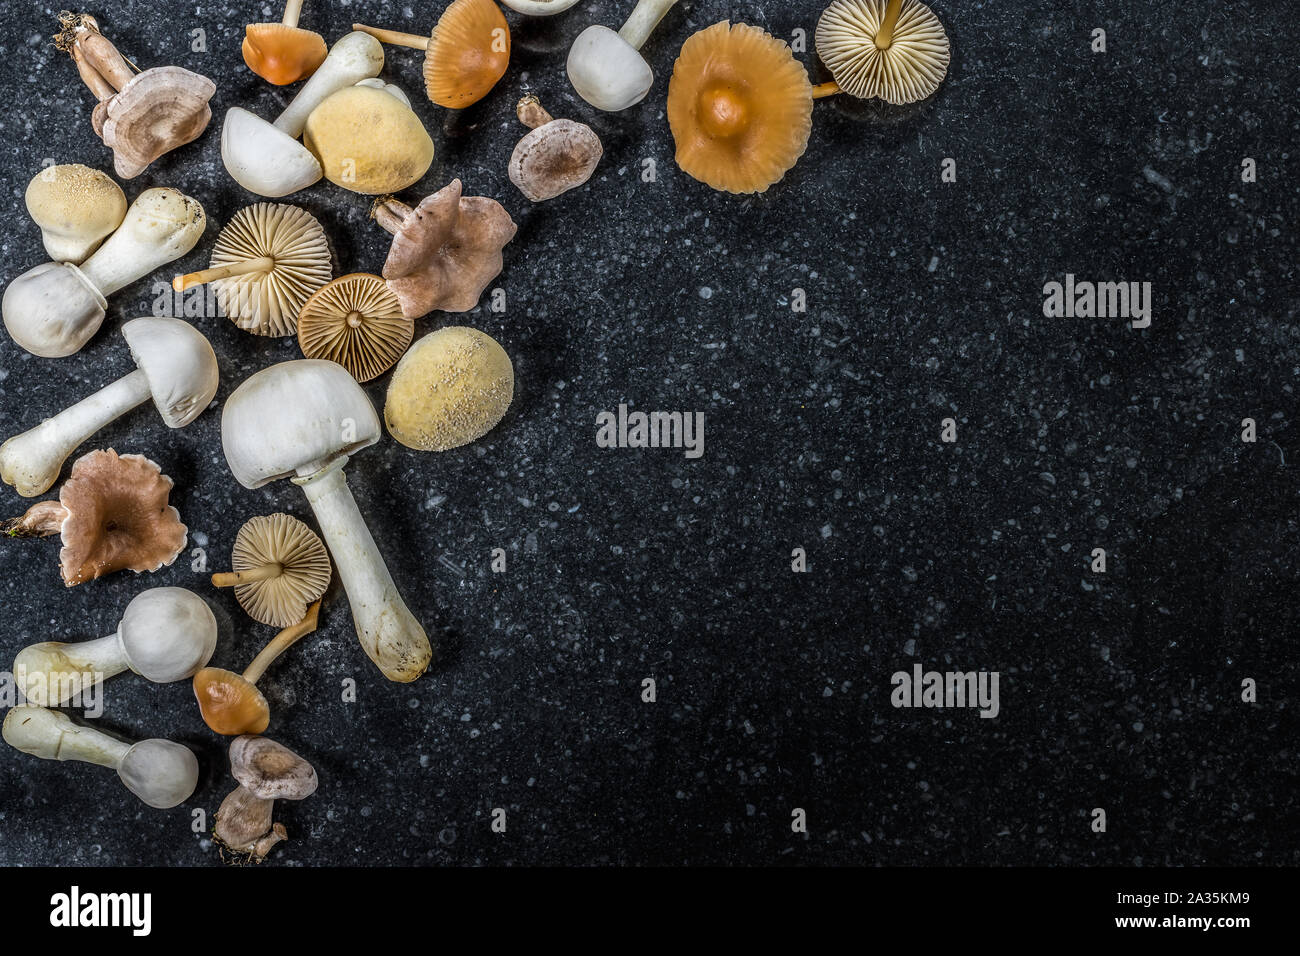 Un grupo de diferentes hongos venenosos y comestibles. El otoño de fondo. Foto de stock